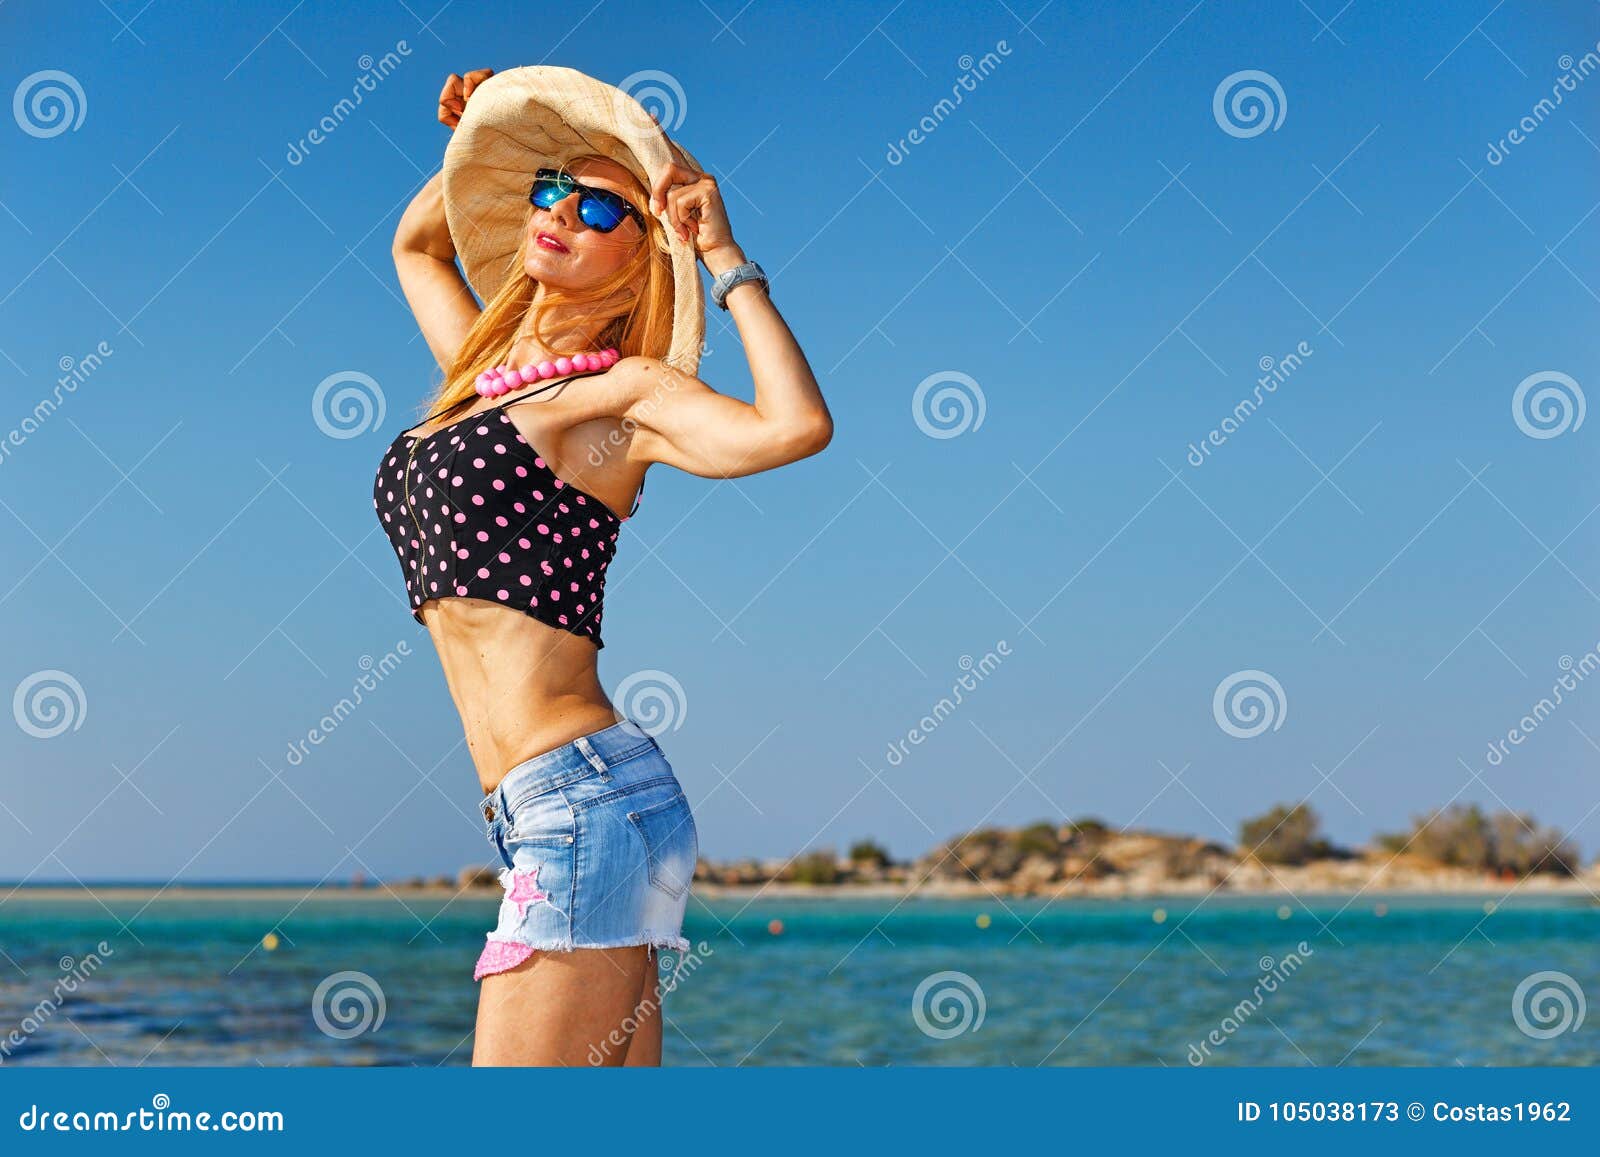 a woman at the beach elafonisos of creta, greece